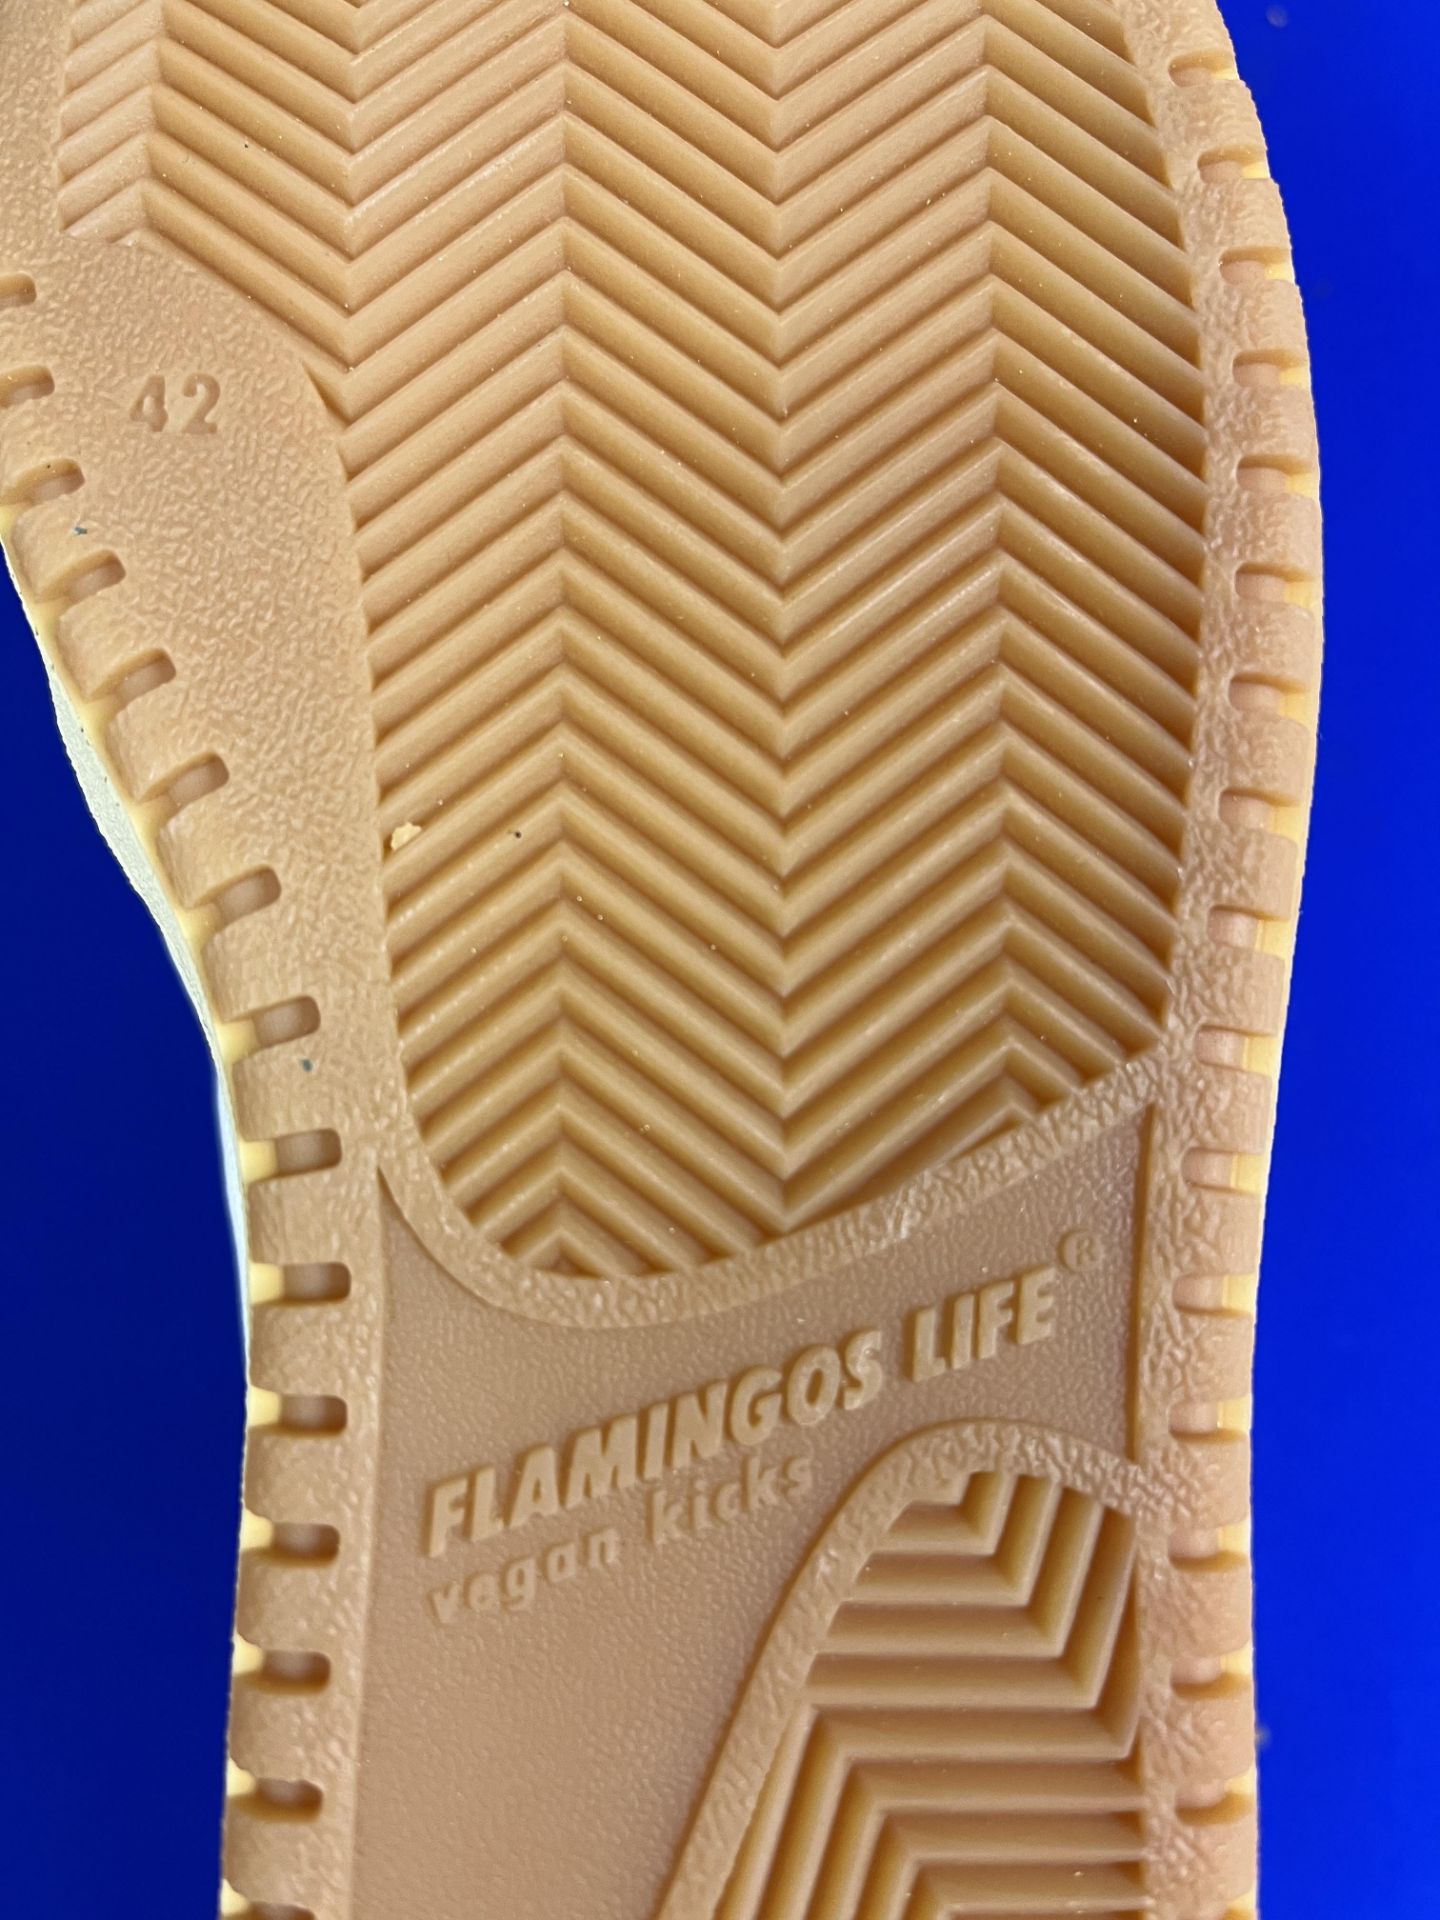 Flamingos Life HighTop Leather Trainer - White/Sage - Size UK 8 - Image 4 of 4